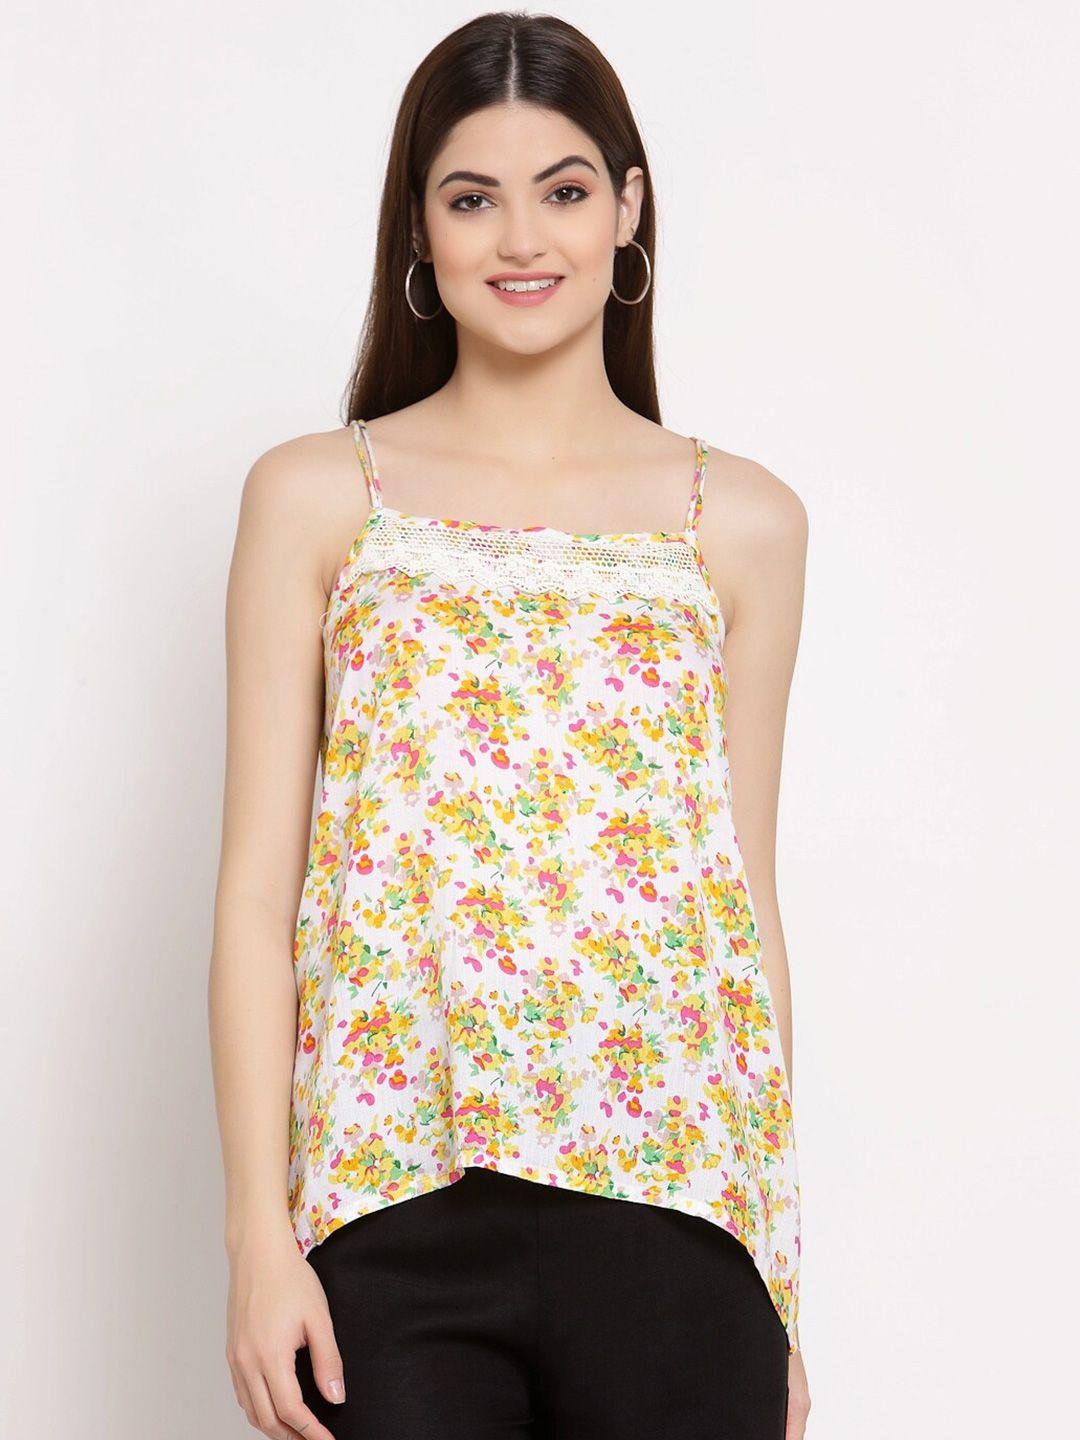 patrorna women white & yellow floral print shoulder straps cotton blend top